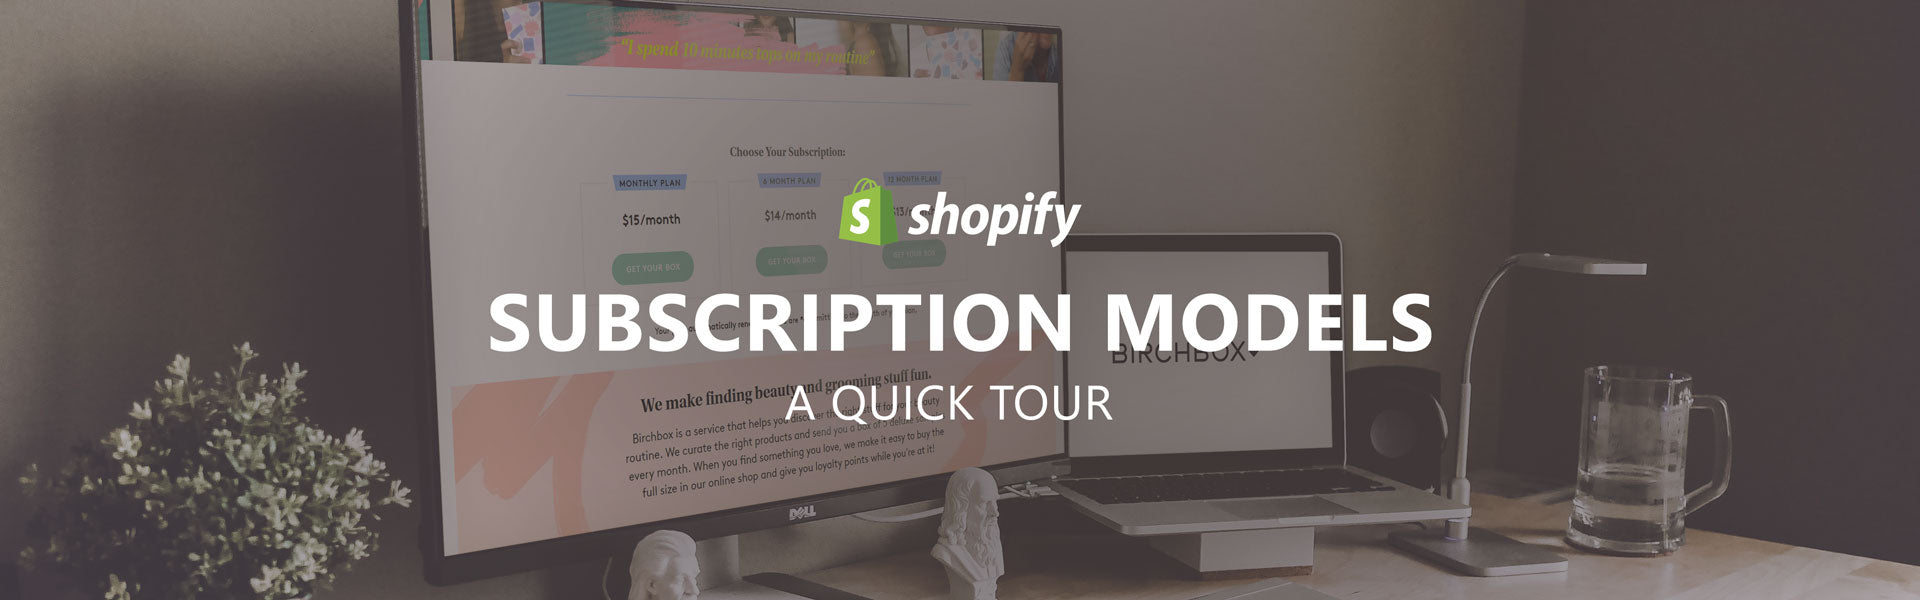 Shopify Subscription Models - A Quick Tour